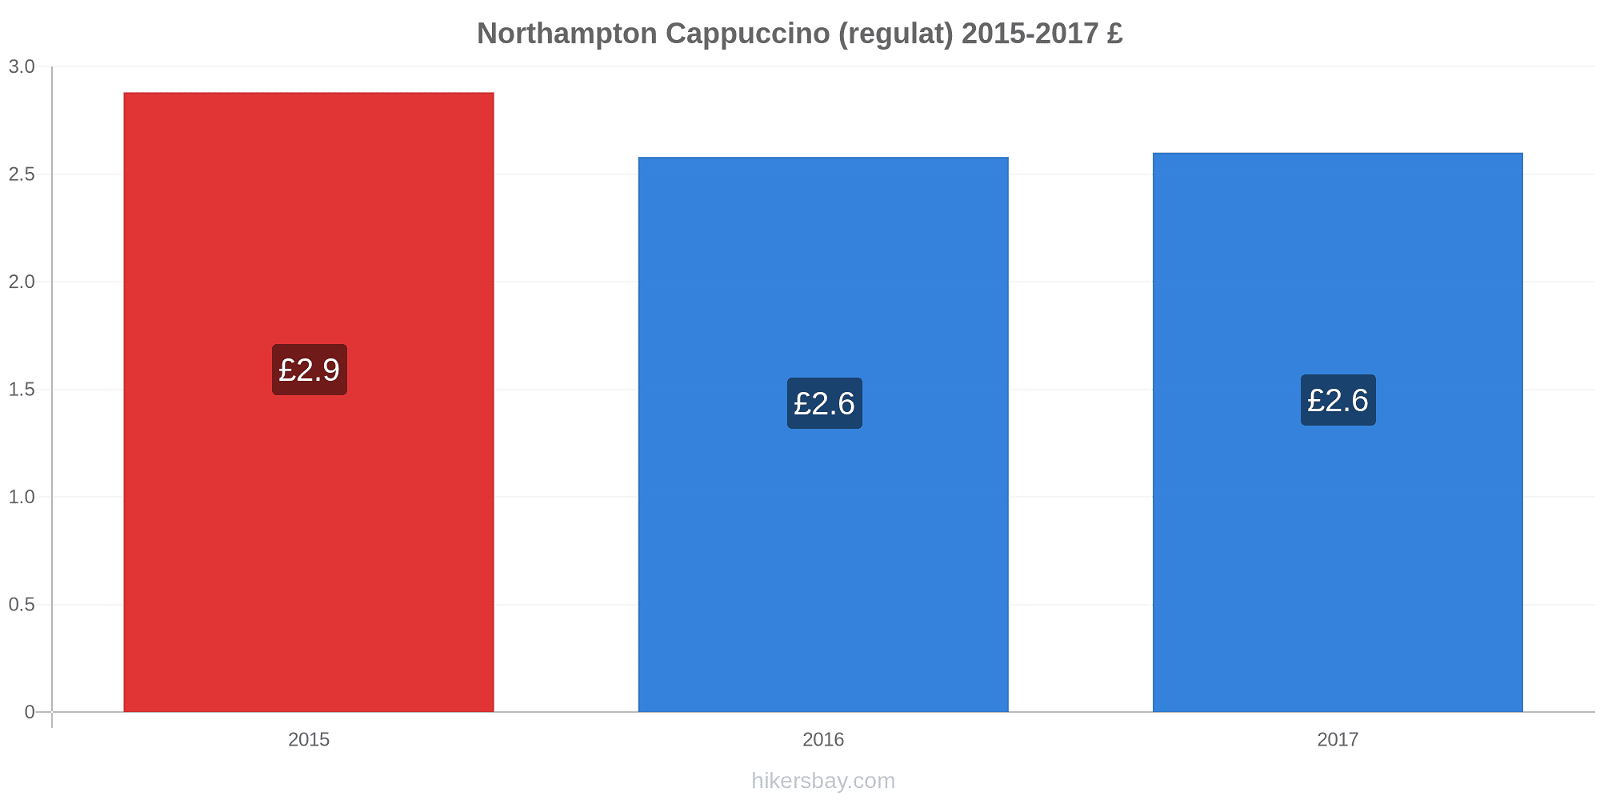 Northampton modificări de preț Cappuccino (regulat) hikersbay.com